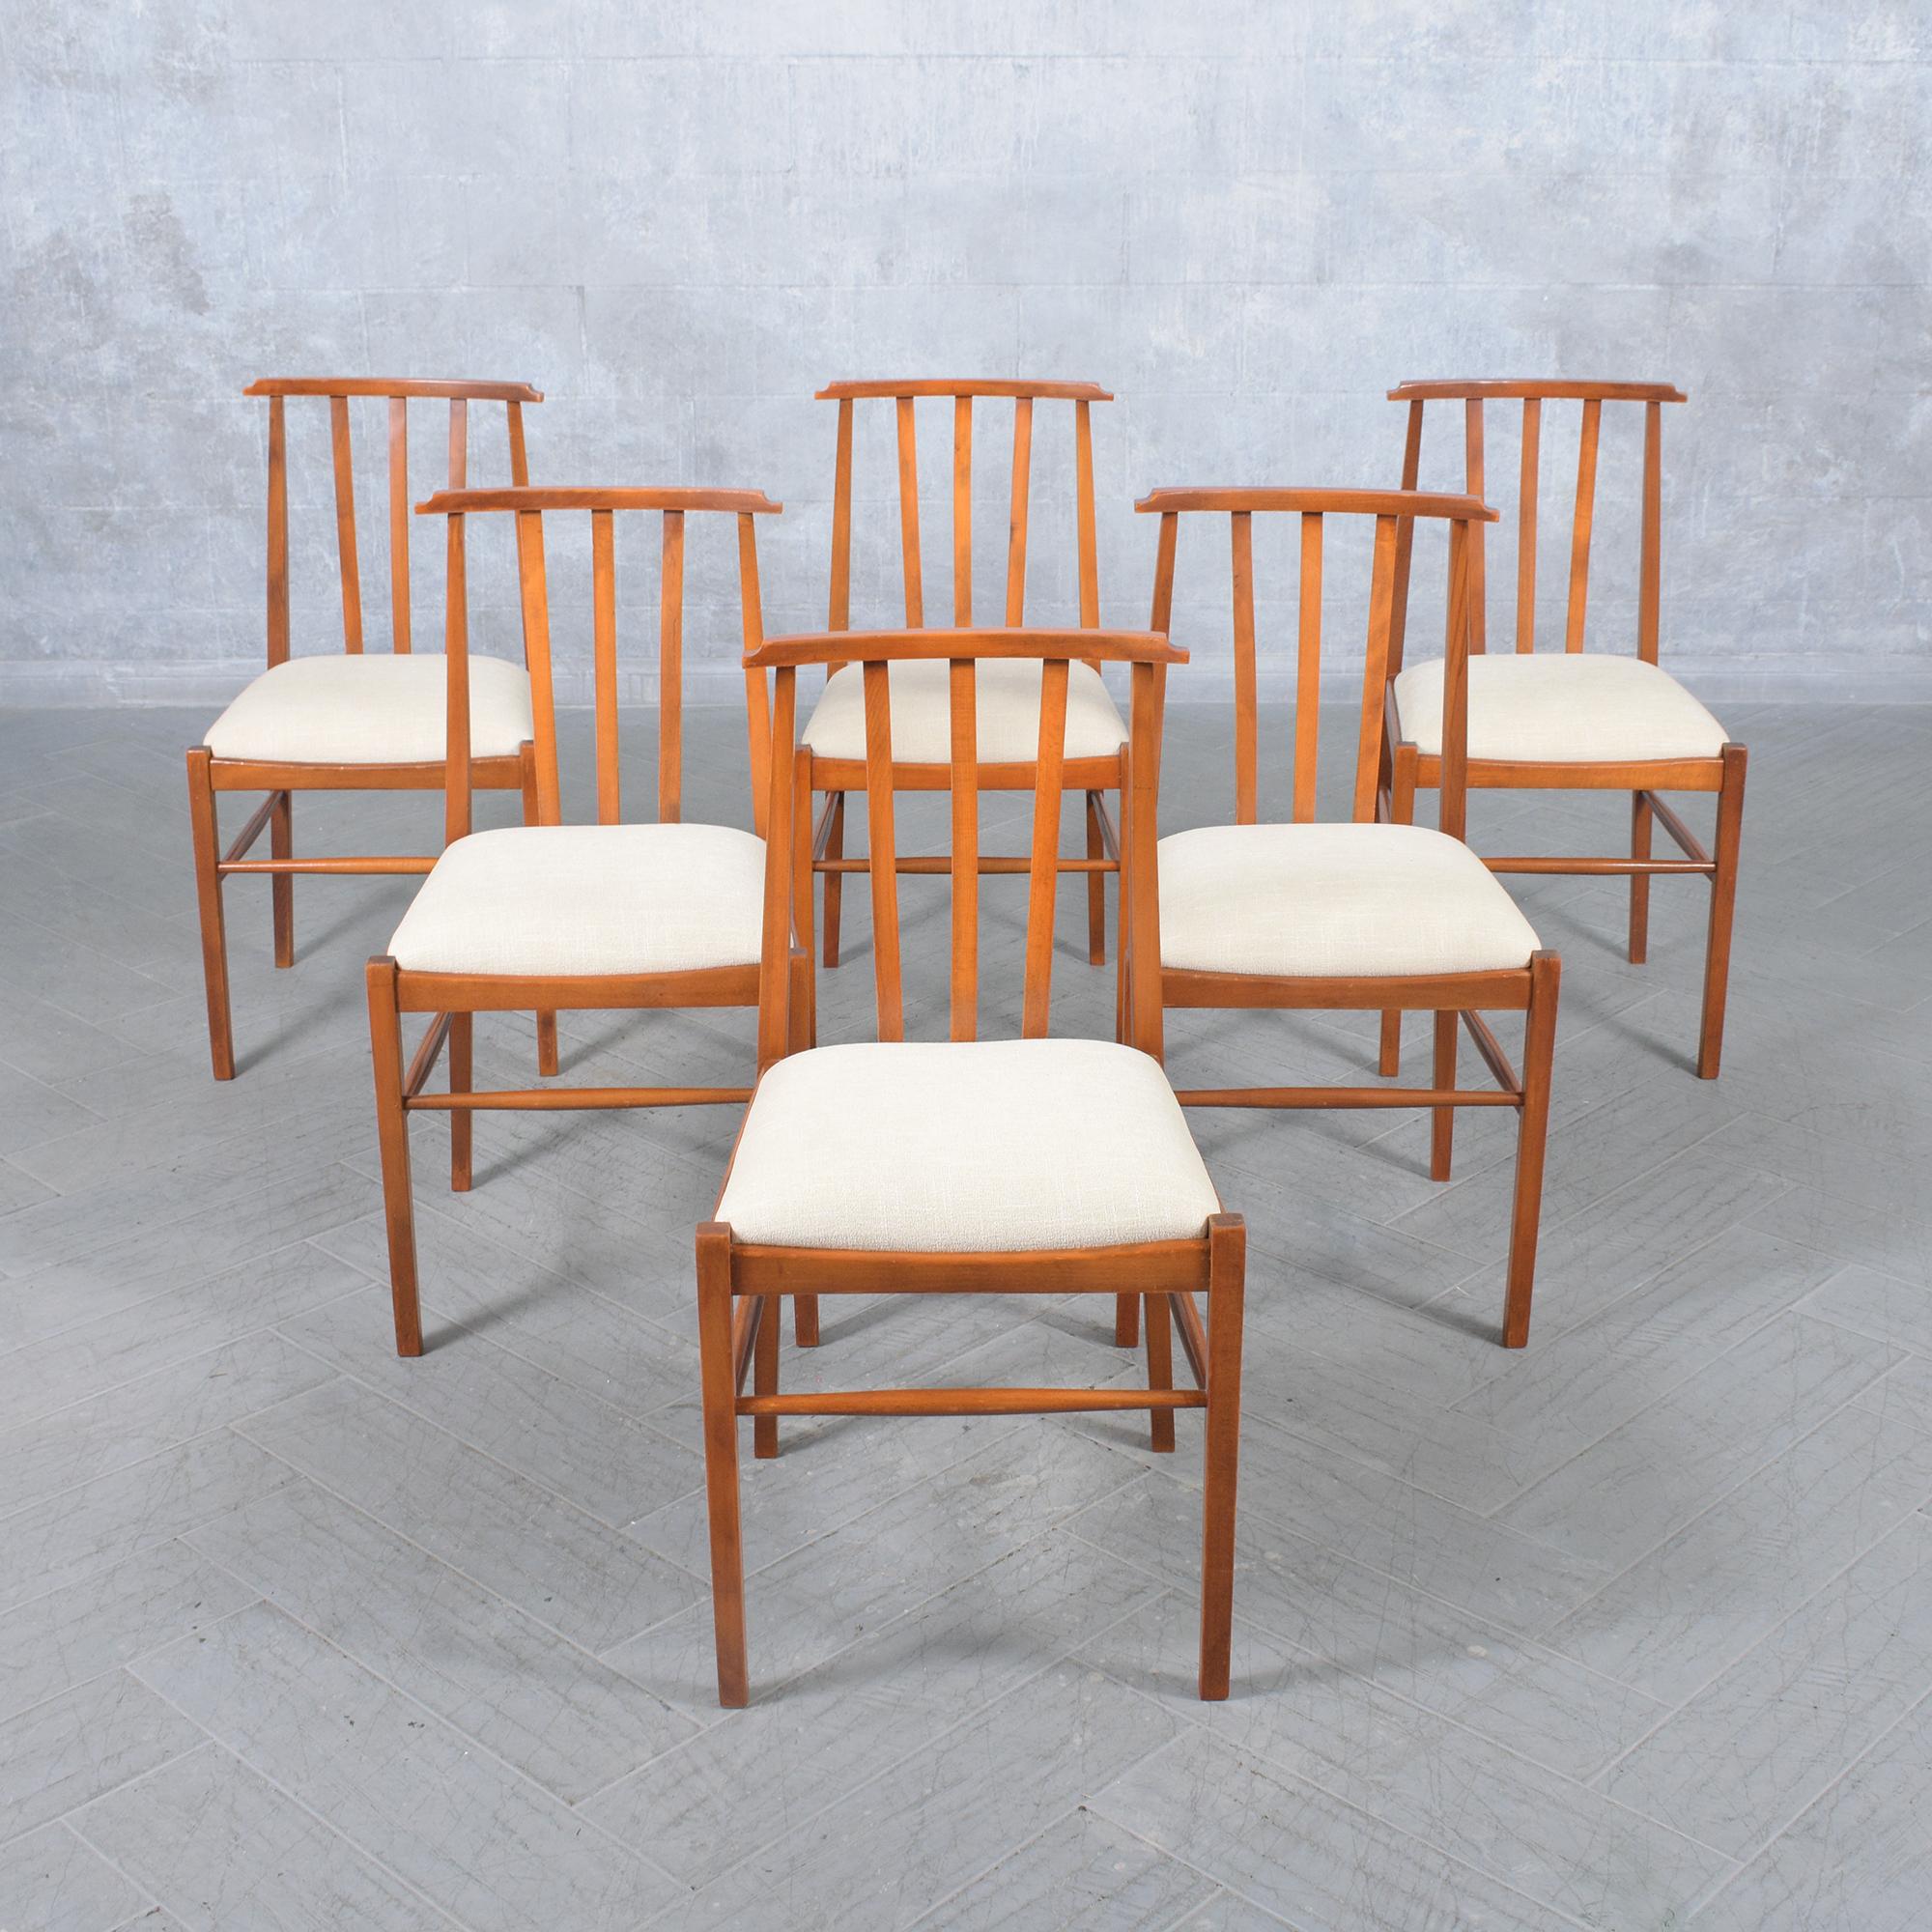 Découvrez notre ensemble de huit chaises de salle à manger des années 1960 méticuleusement restaurées - une fusion de charme vintage et d'élégance moderne. Chaque chaise de cette collection incarne un savoir-faire exceptionnel, fabriqué à la main à